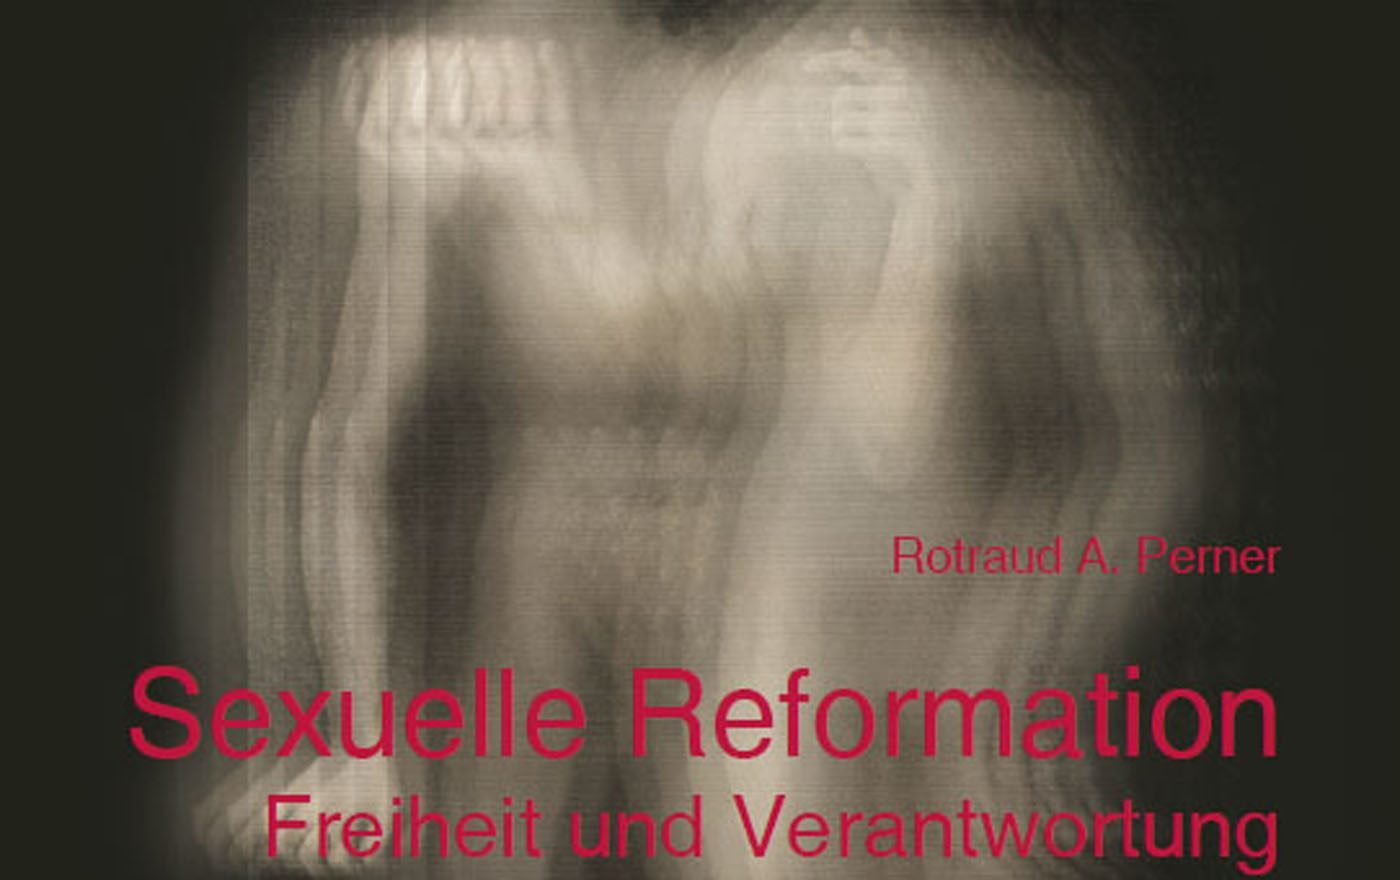 „Sexuelle Reformation. Freiheit und Verantwortung“ ist der Titel des neuen Buches von Rotraud A. Perner, Psychoanalytikerin, Universitätsprofessorin und evangelische Pfarrerin im Ehrenamt.